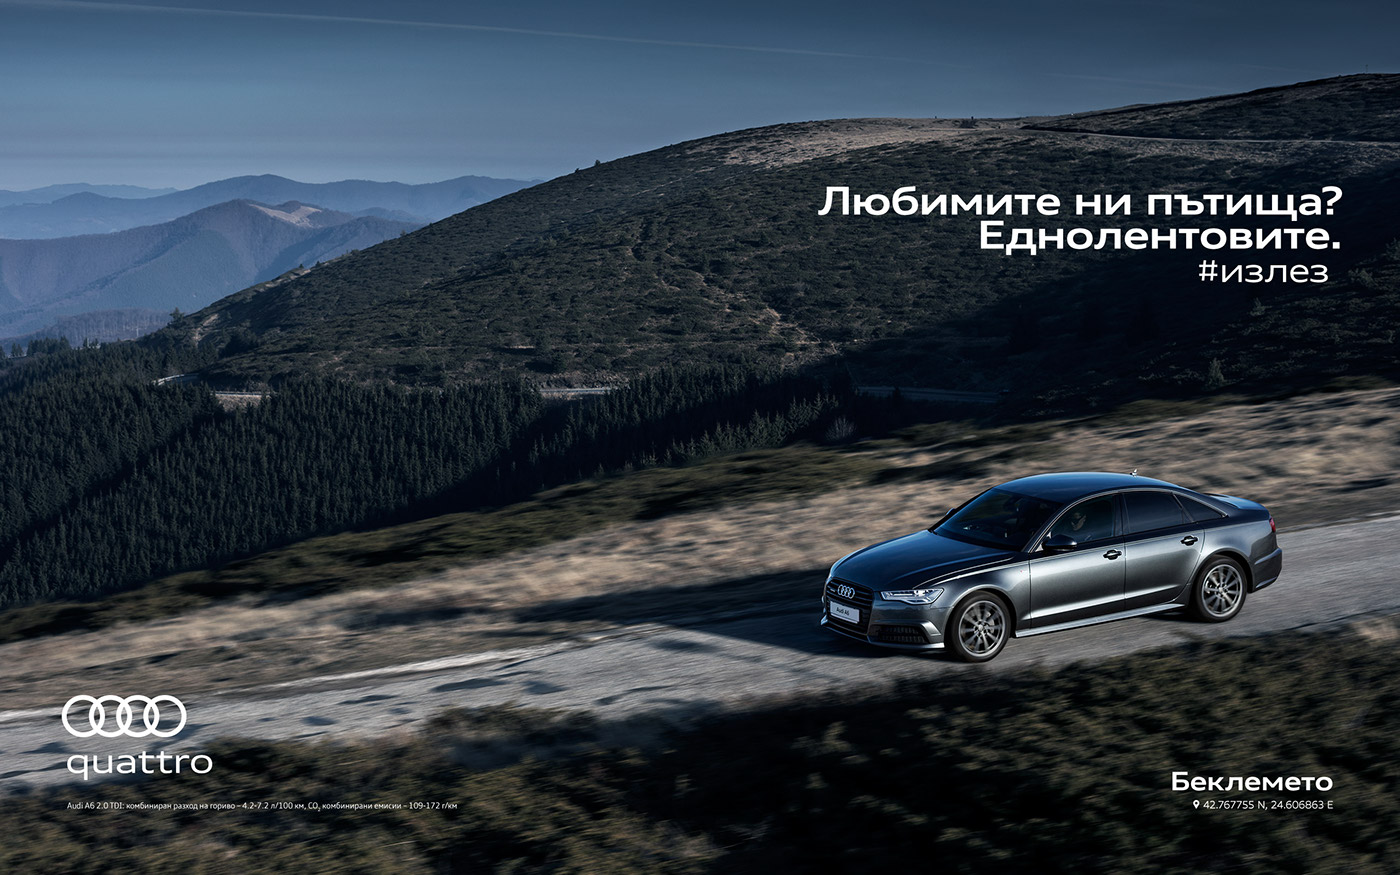 automotive   Audi quattro bulgaria campaing commercial car automobile Landscape